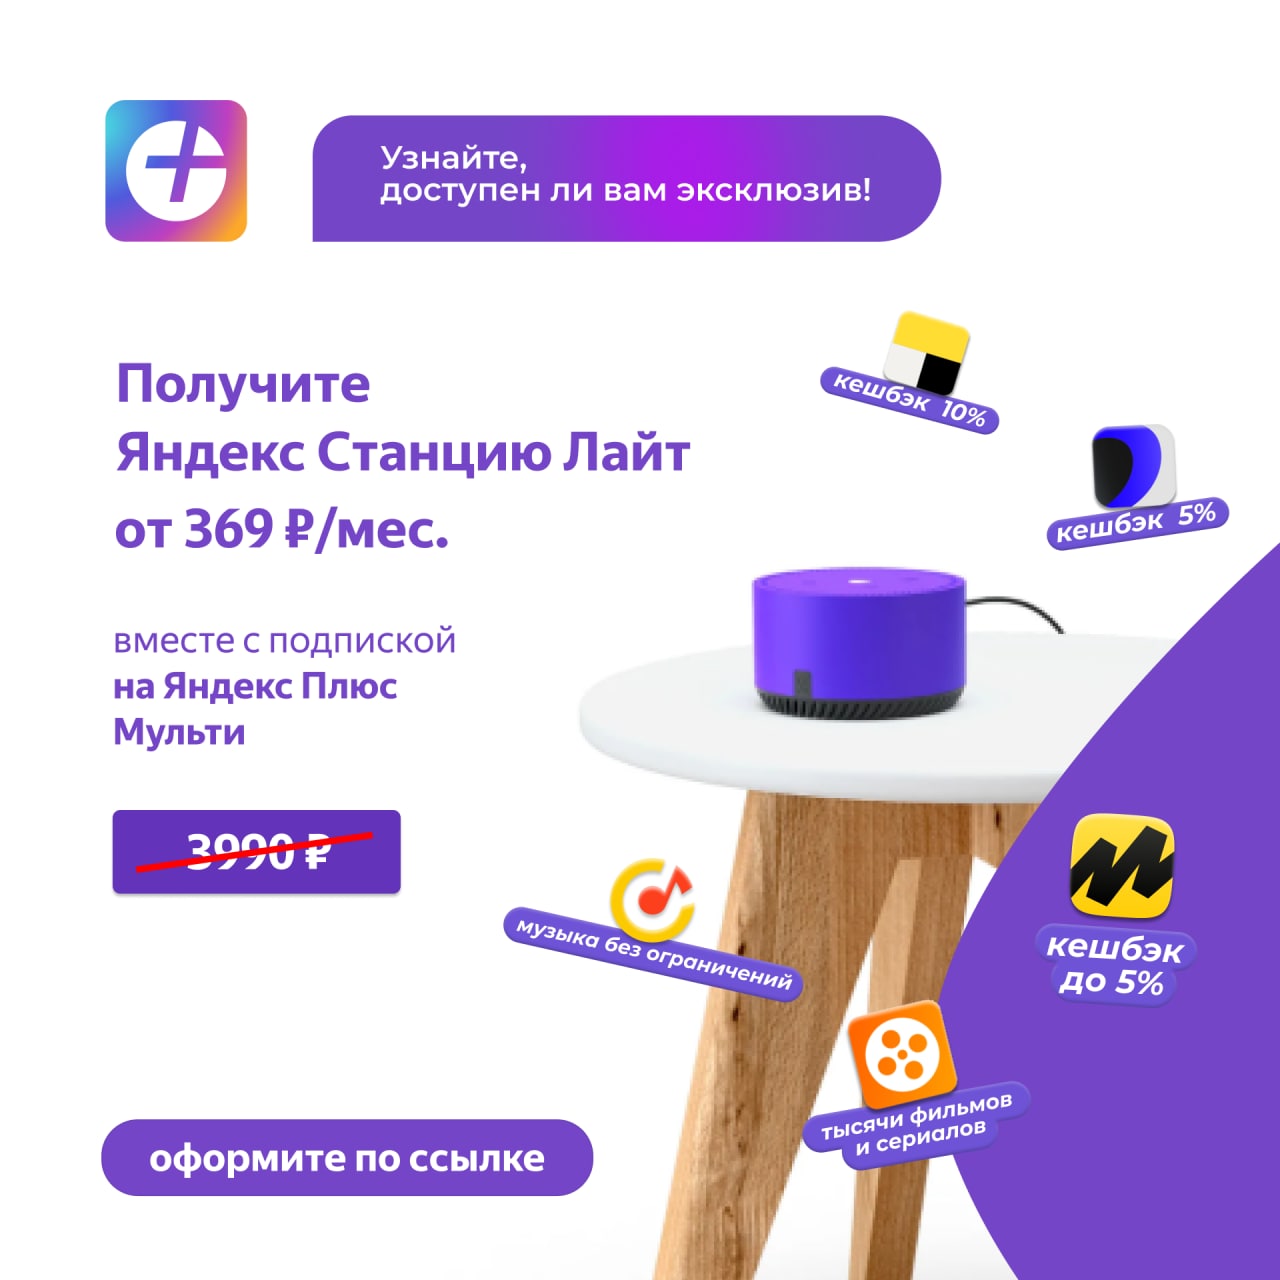 Яндекс подписка купить телеграмм фото 20